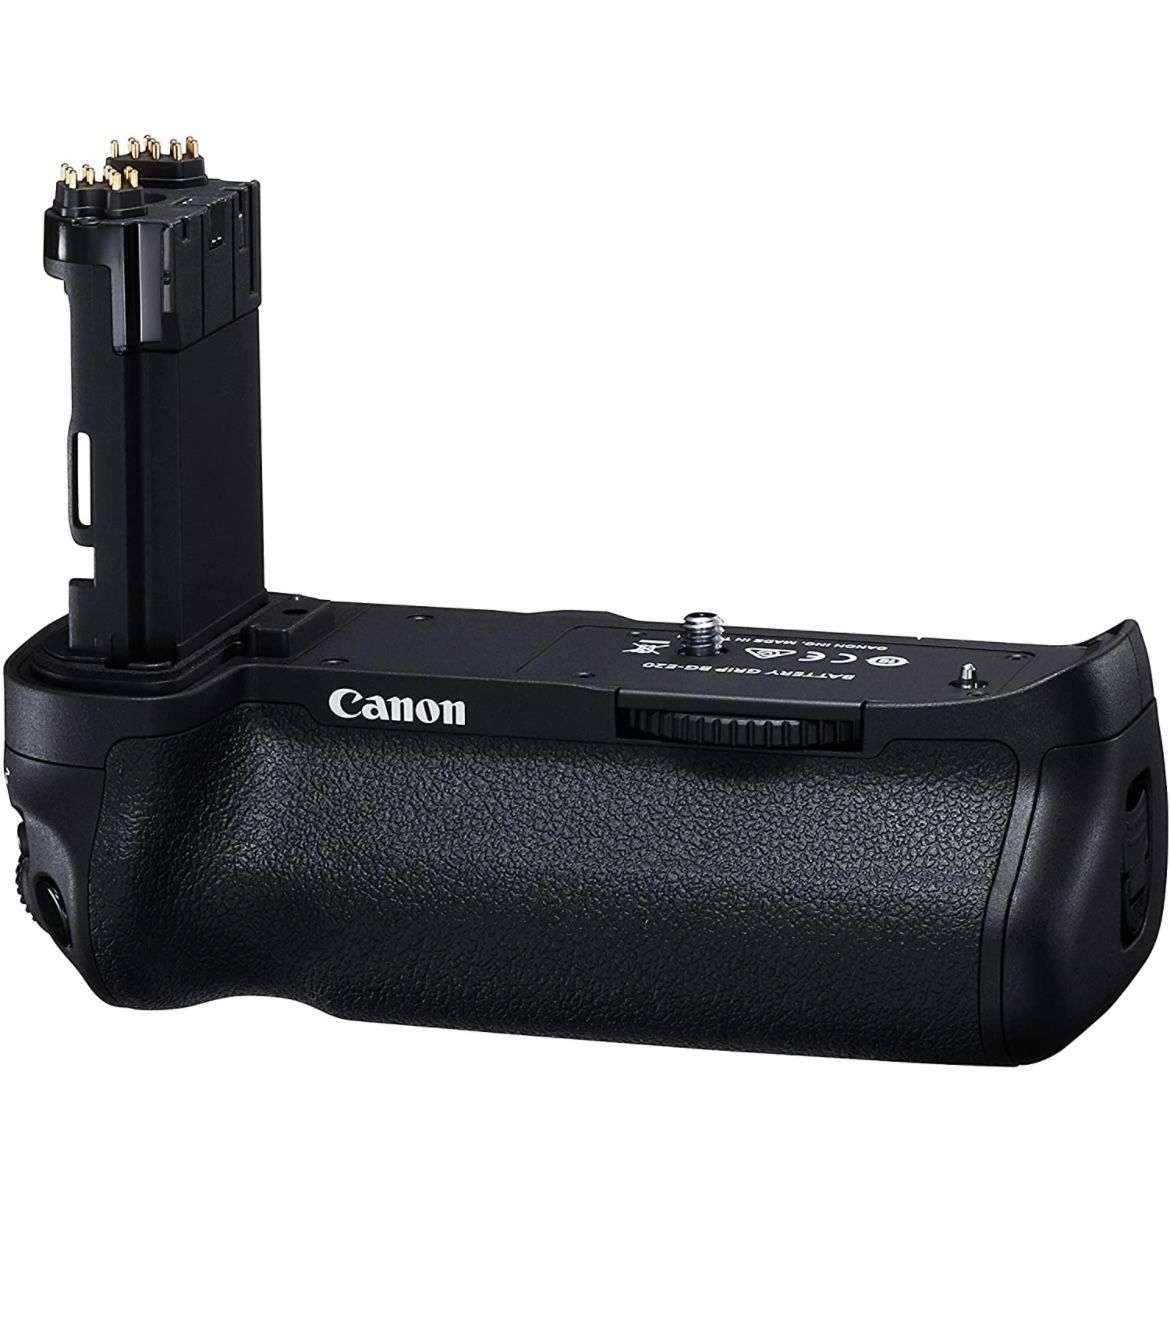 Canon Battery Grip BG-E20 for the Canon 5D Mark IV Digital SLR Camera